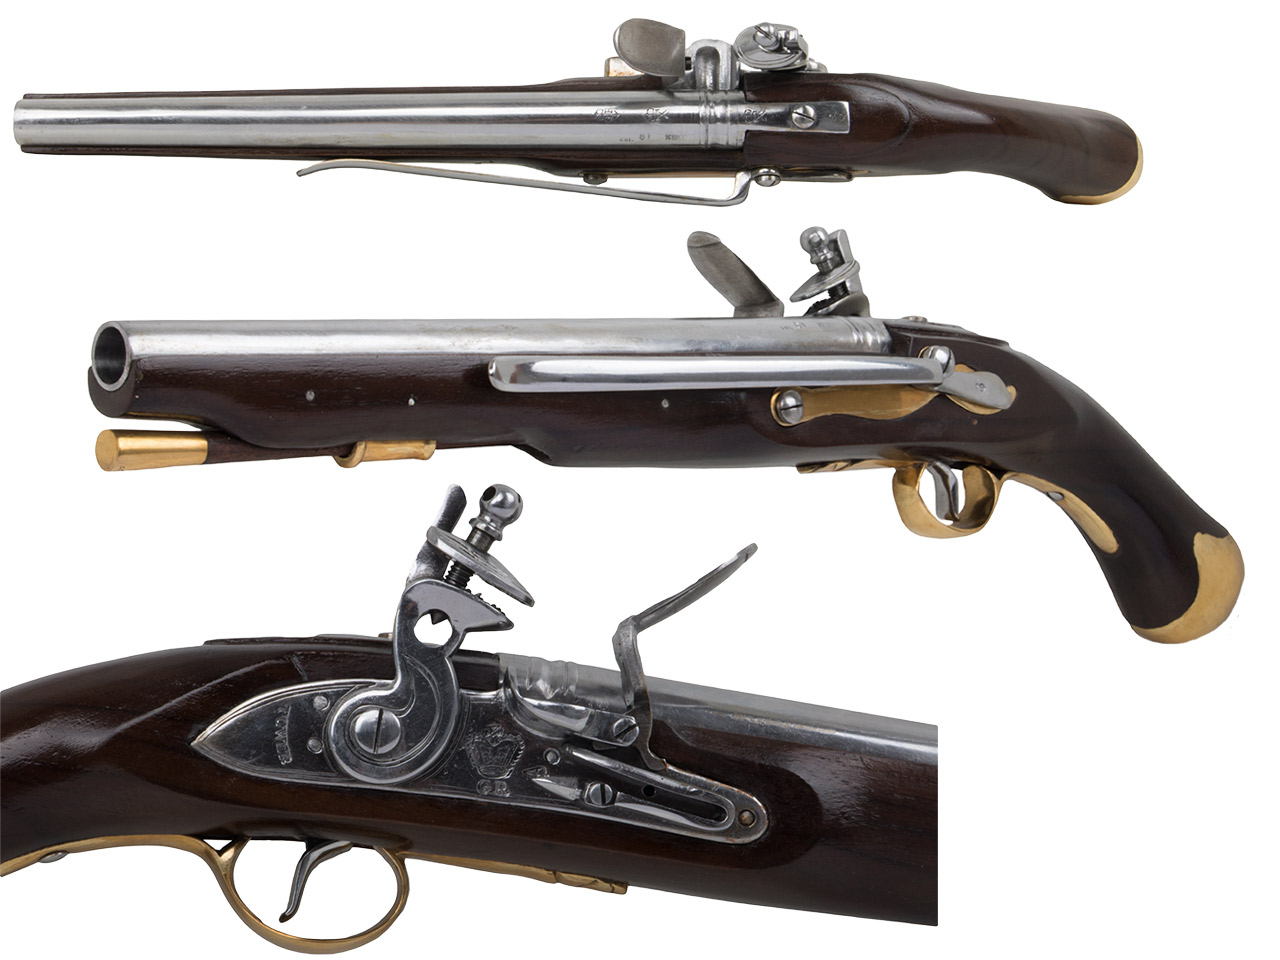 Vorderlader Steinschlosspistole British Royal Navy Sea Service Pistol Pattern 1756 Kaliber .63 bzw. 16 mm (P18)